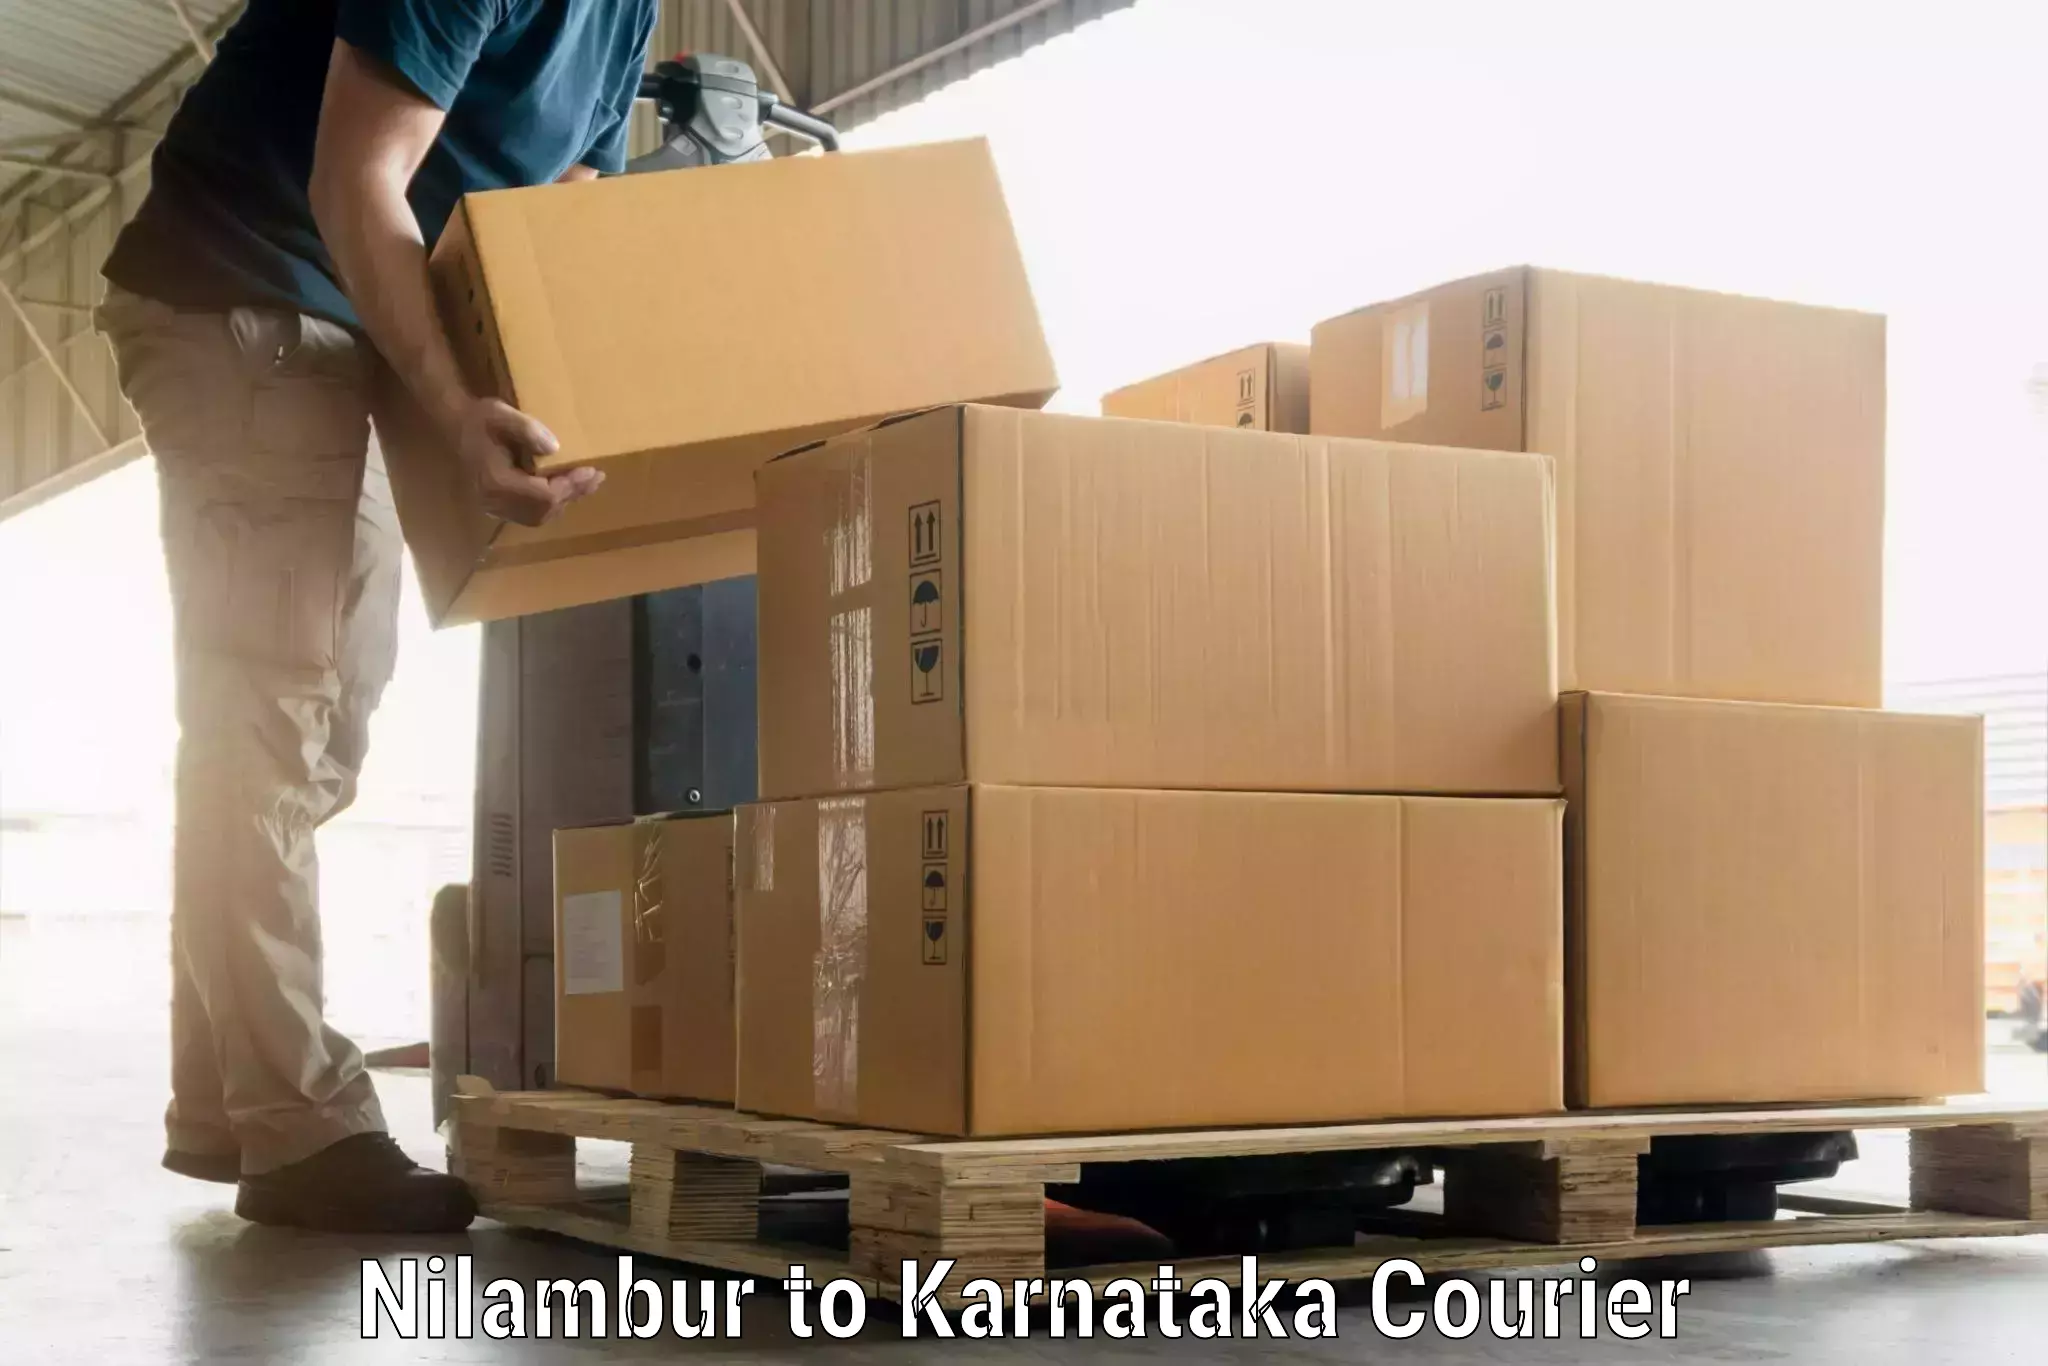 Luggage shipment specialists Nilambur to Mannaekhelli